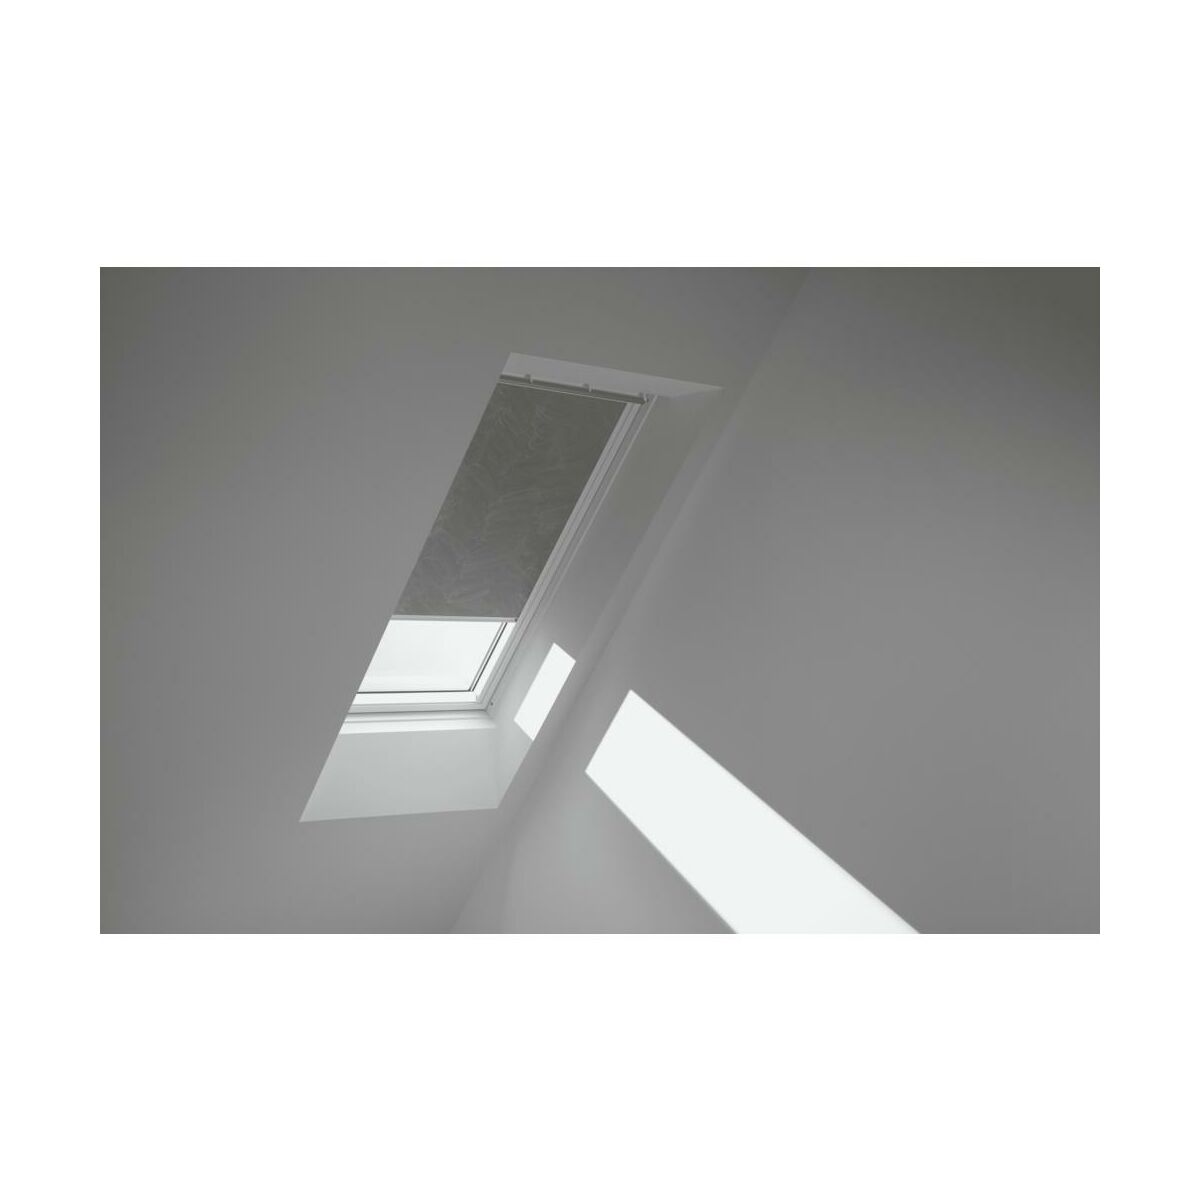 Roleta zaciemniająca do okna dachowego 78x140 cm khaki z białą ramą Velux